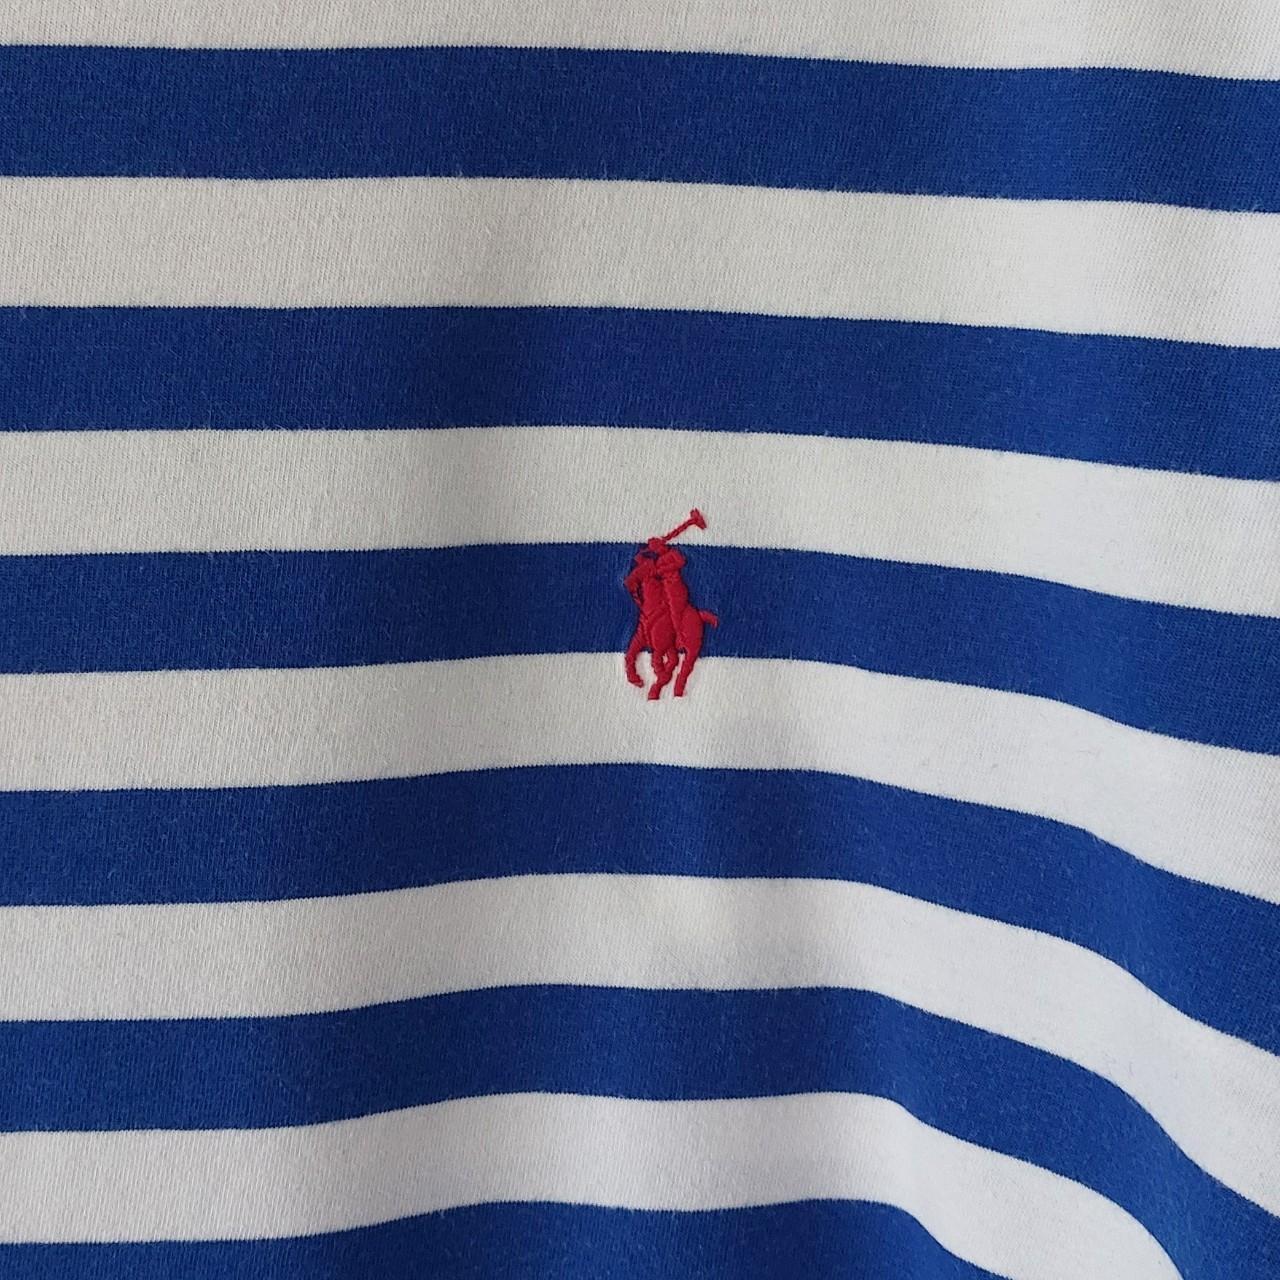 Blue & white striped ralph lauren tshirt. - Depop